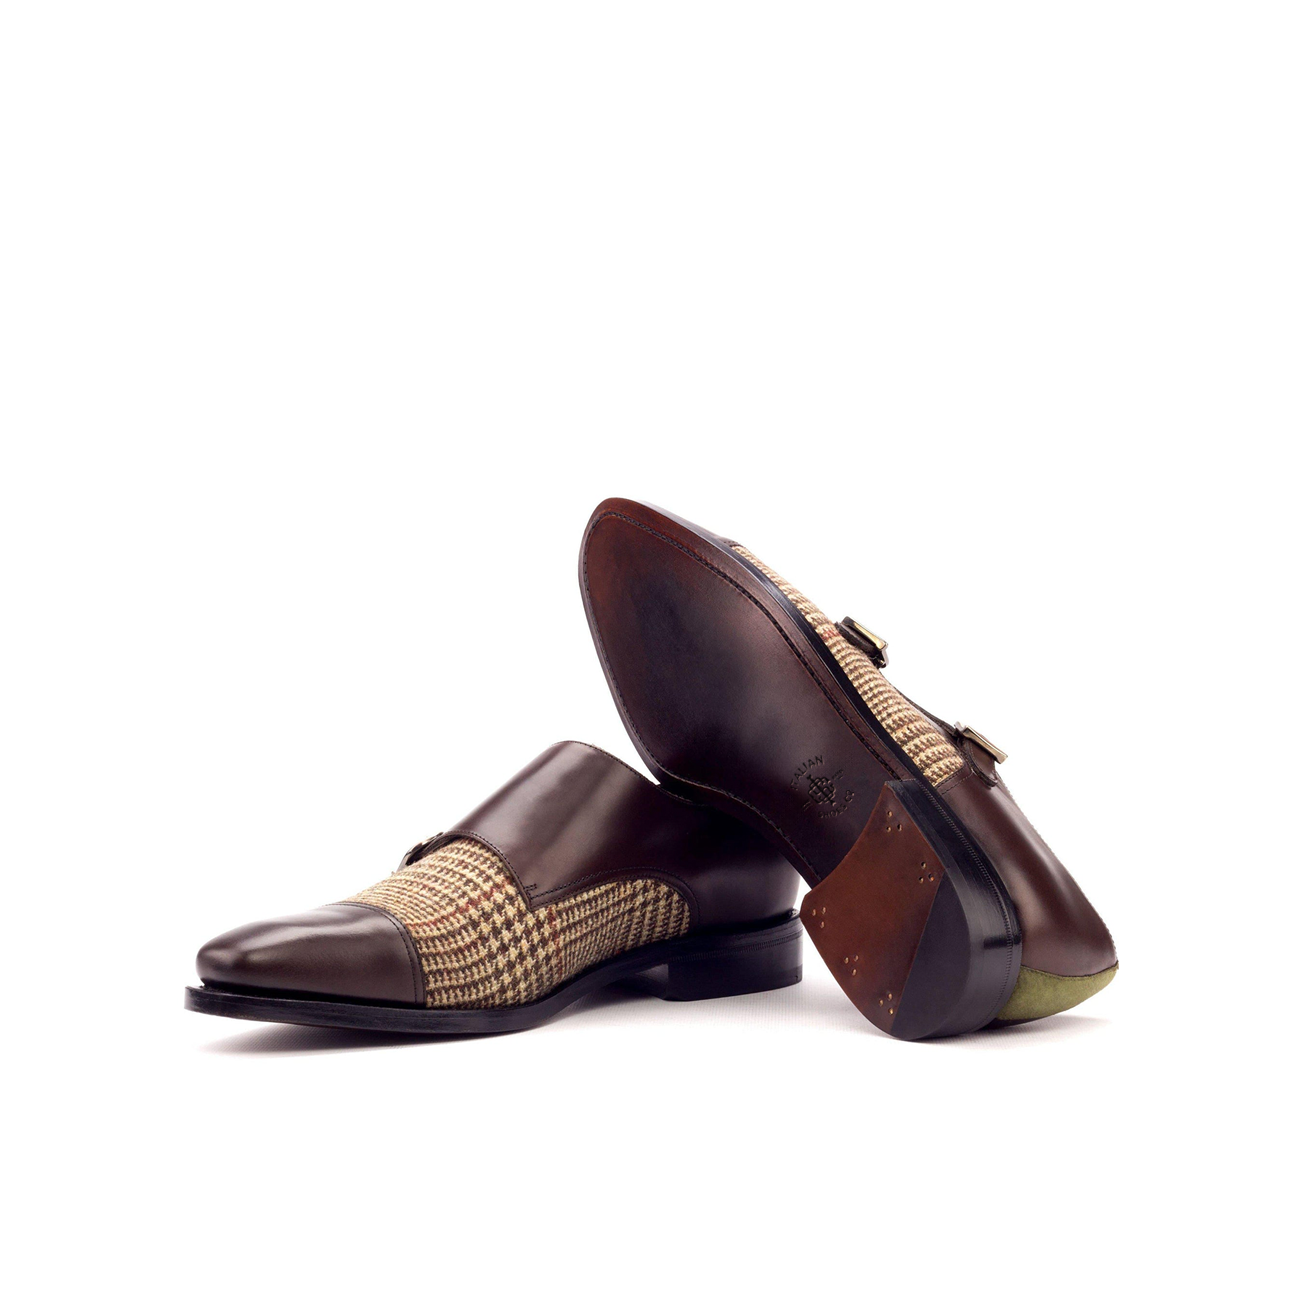 Aristocrat Adorn Double Monk Shoes